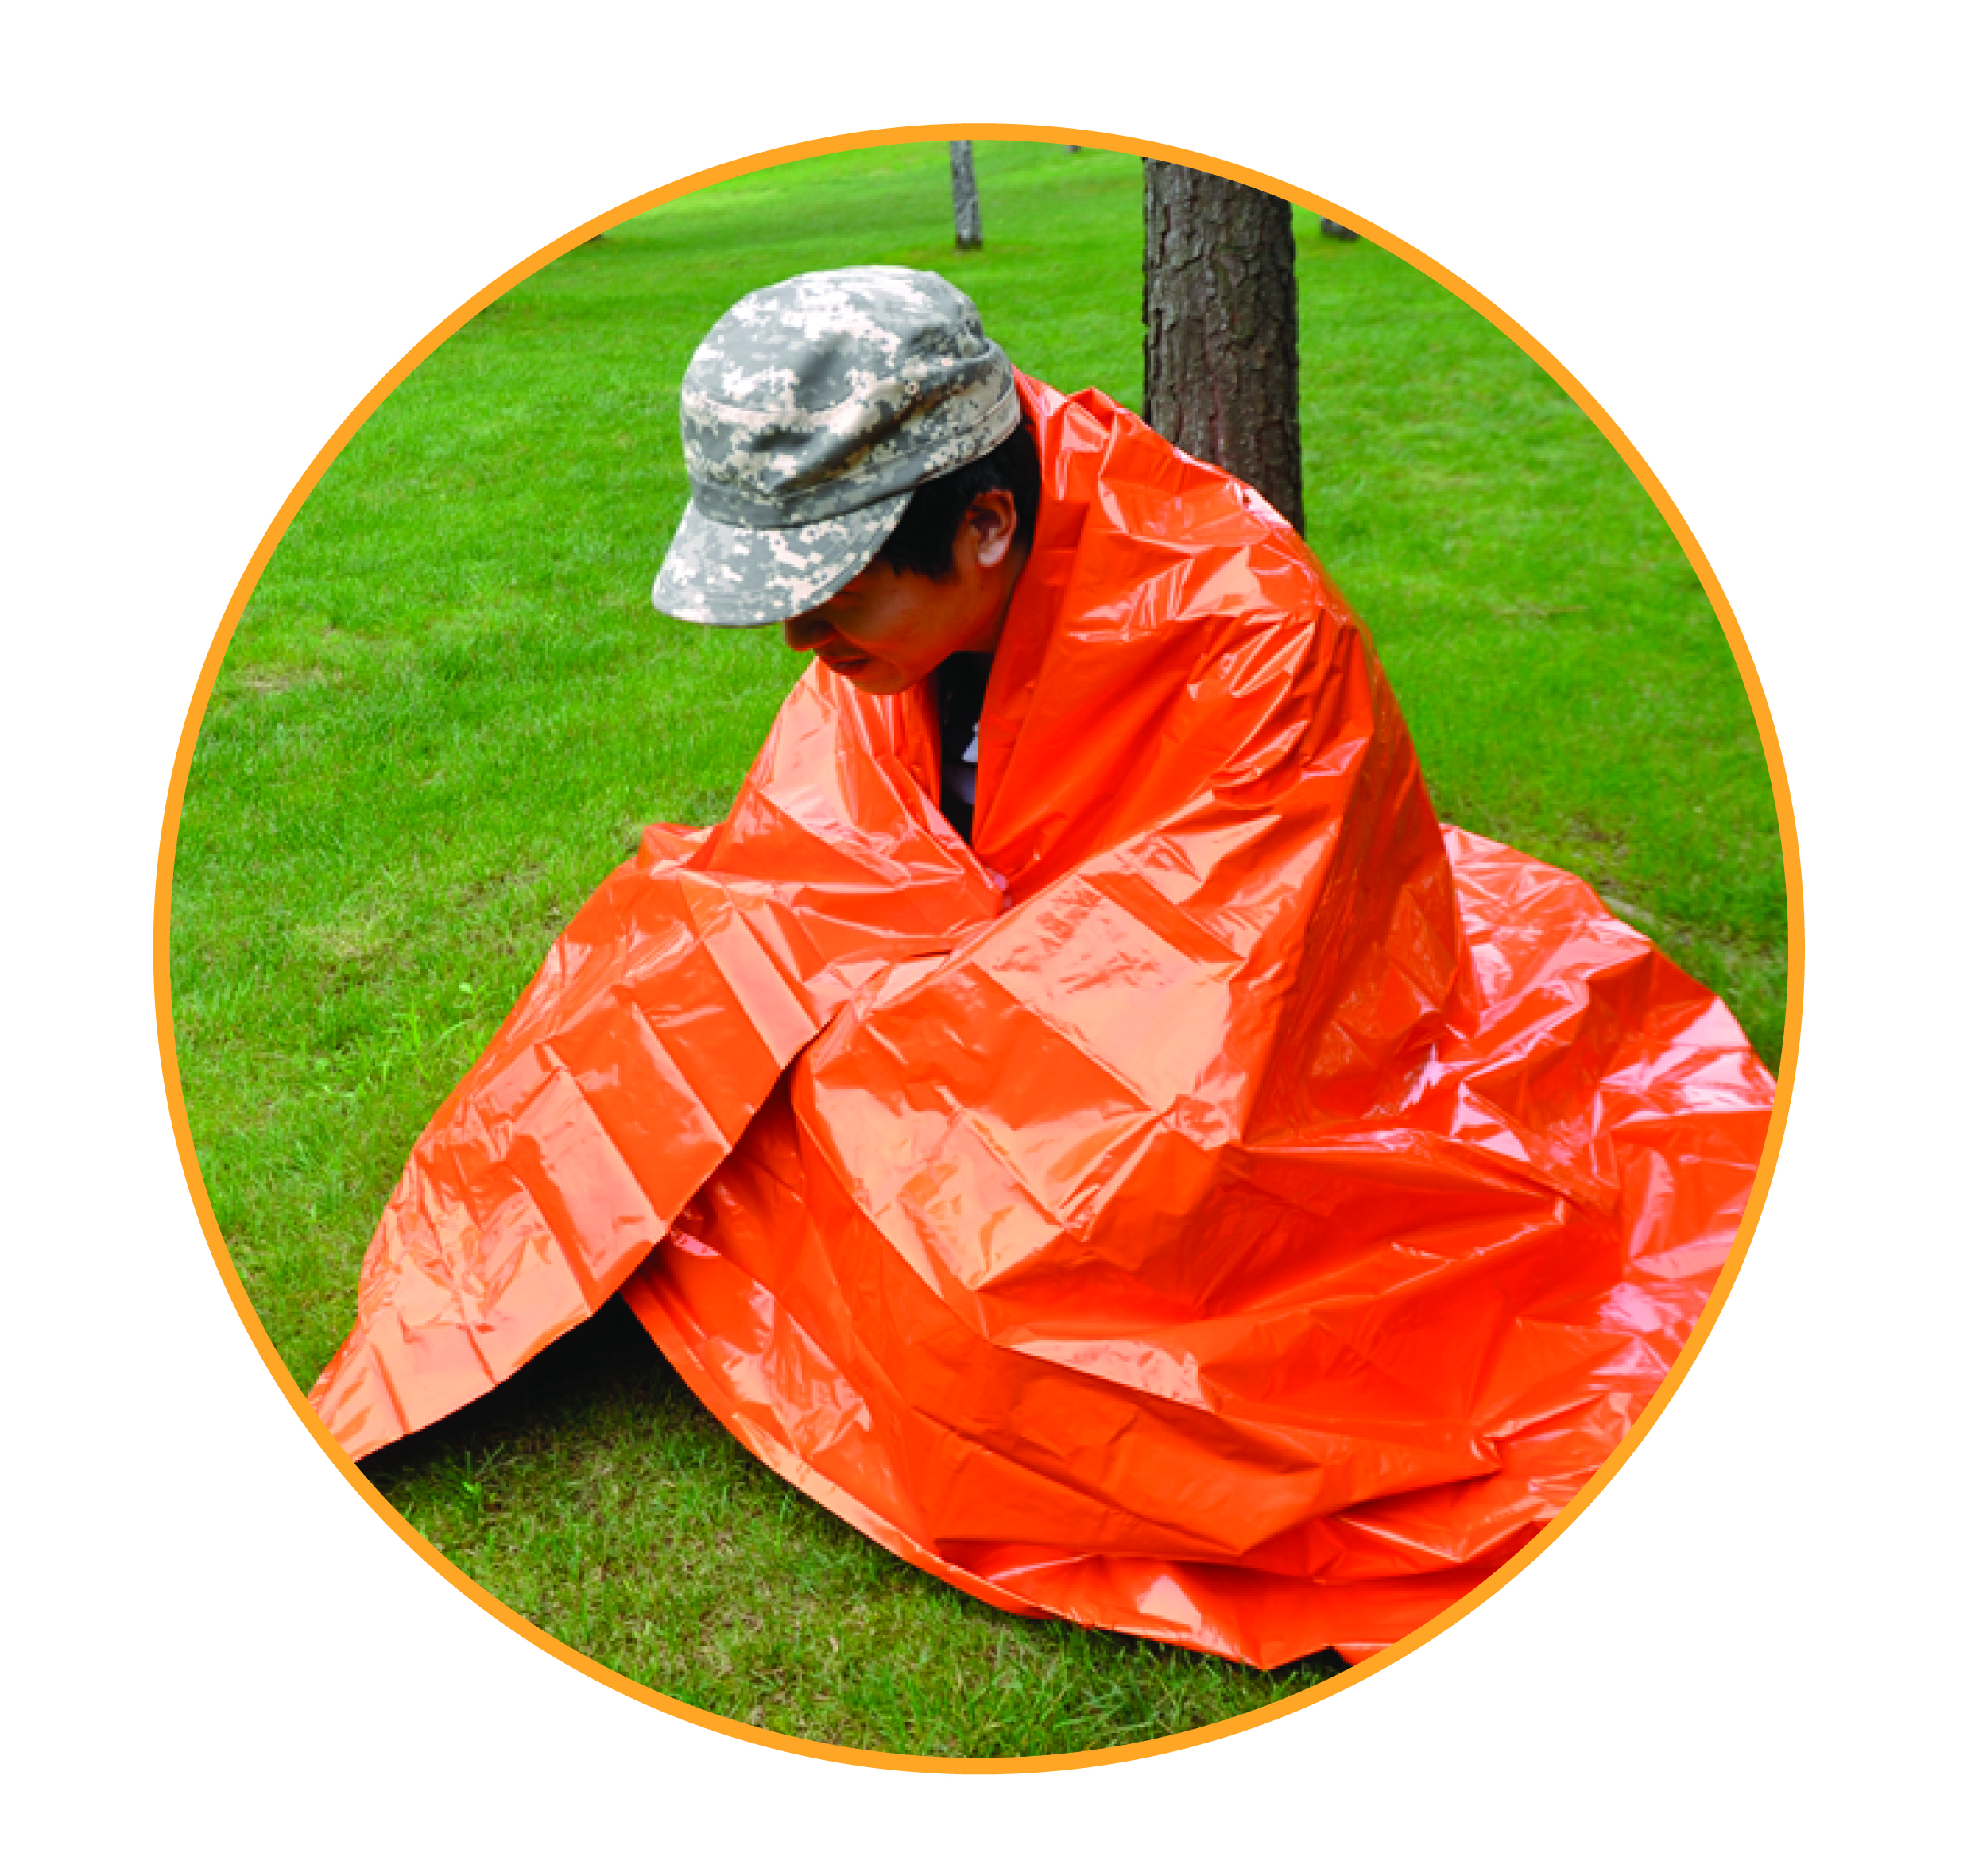 Покрывало экстренное – оранжевое.  AceCamp Emergency Blanket - Orange